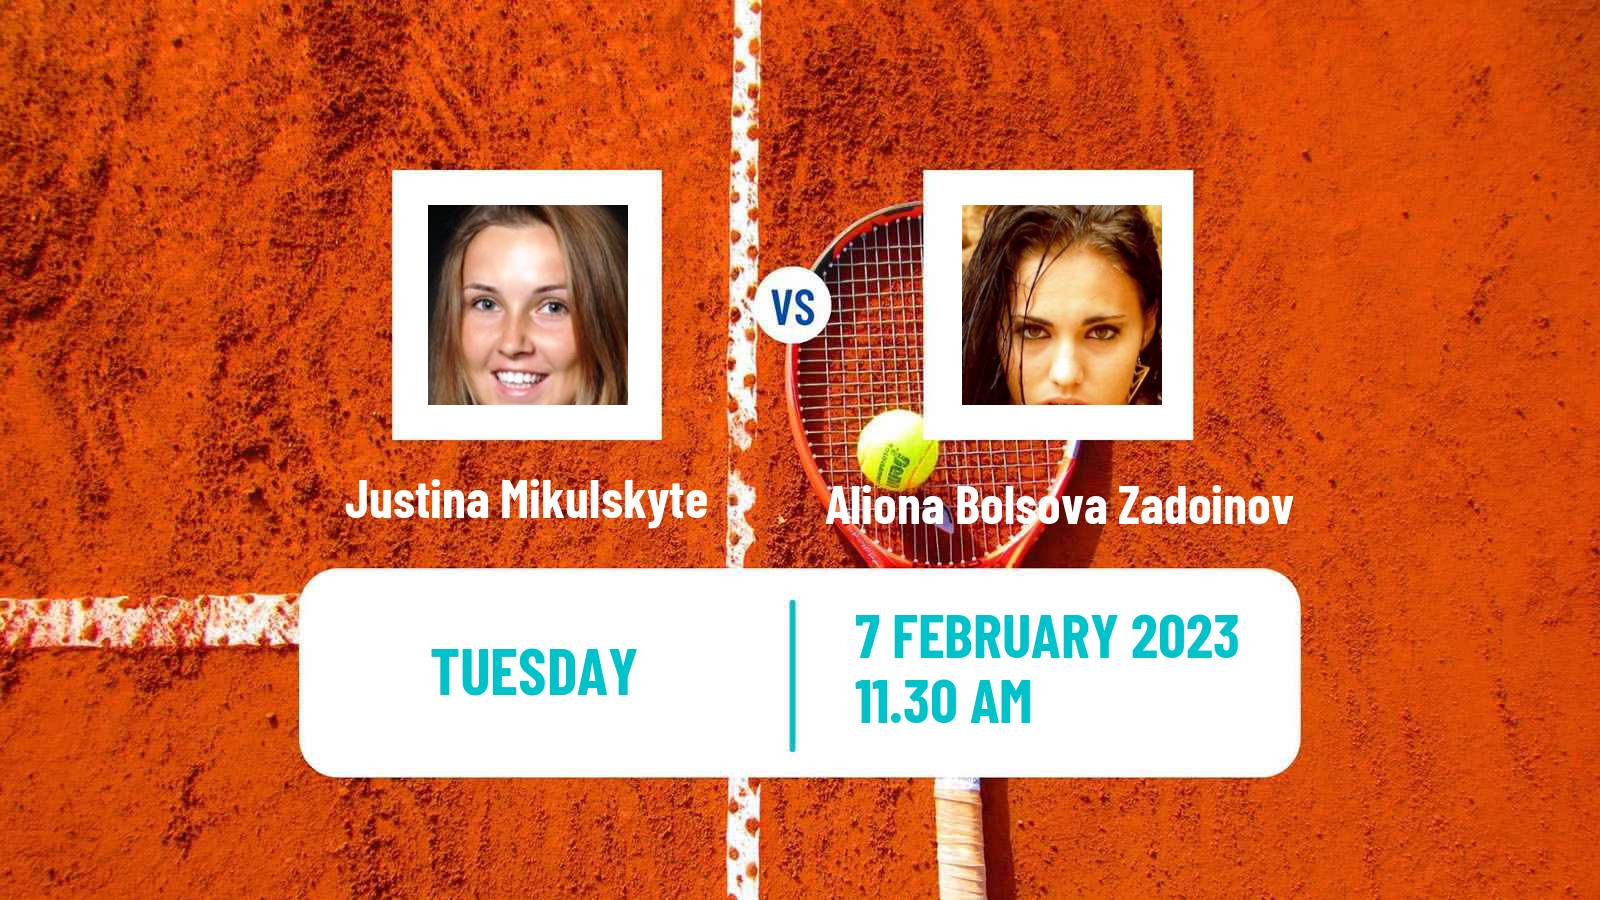 Tennis ITF Tournaments Justina Mikulskyte - Aliona Bolsova Zadoinov